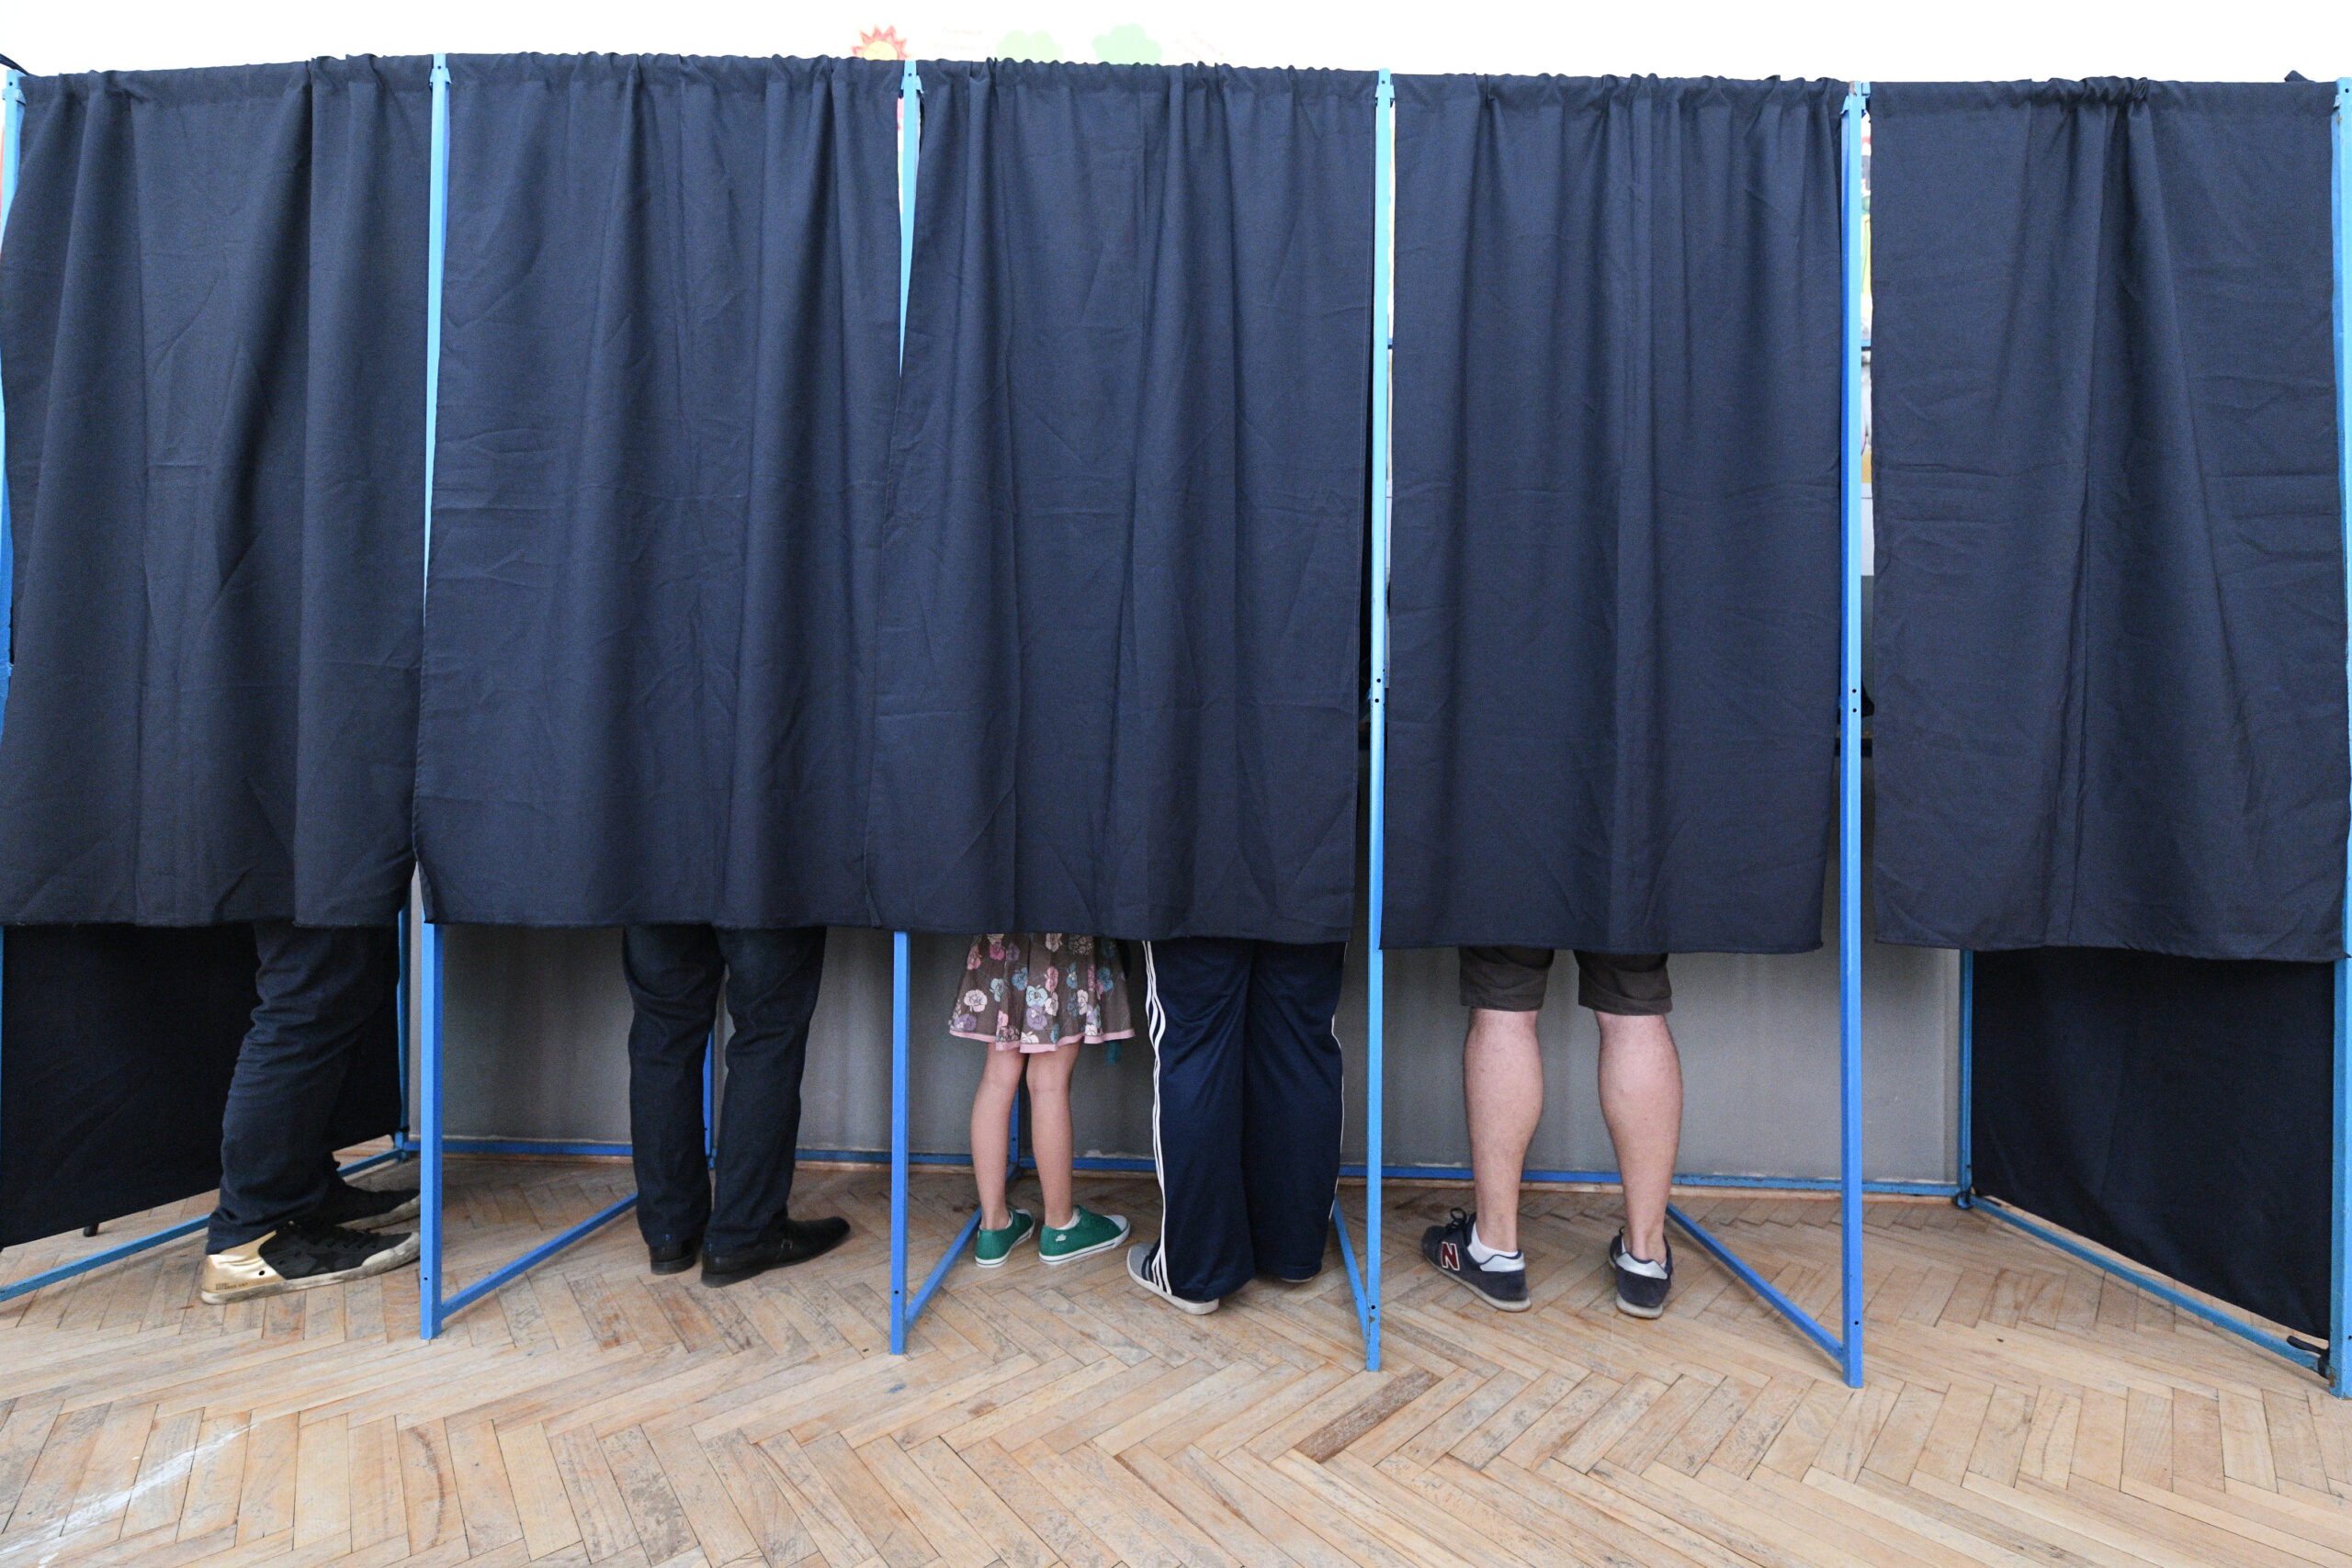 Sondaj: Alegereile prezidențiale sunt cele mai importante pentru electoratul român